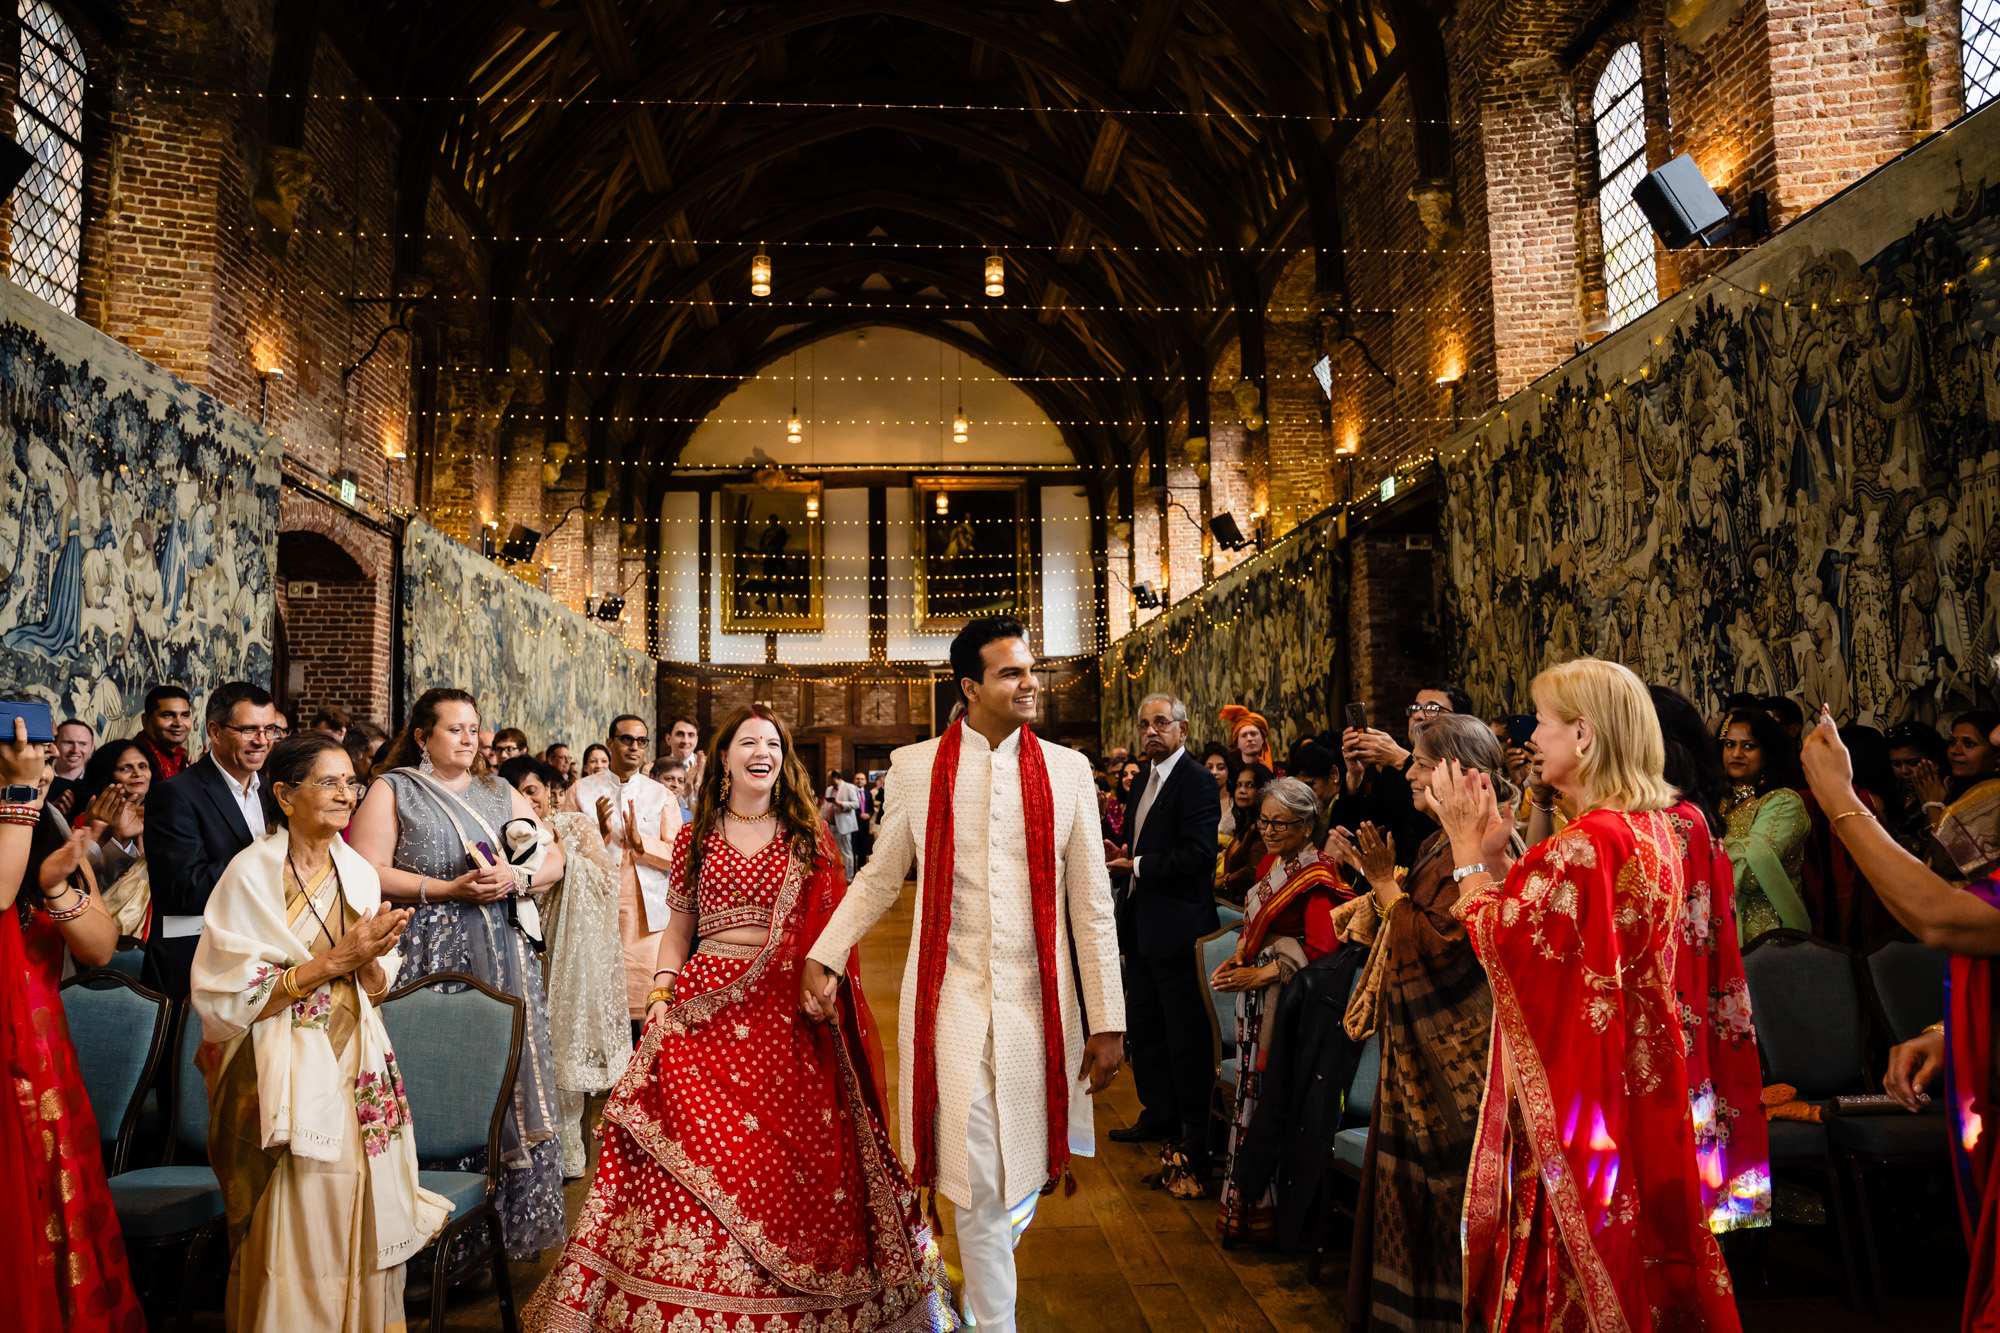 Hindu wedding at Hatfield house in Hertfordshire